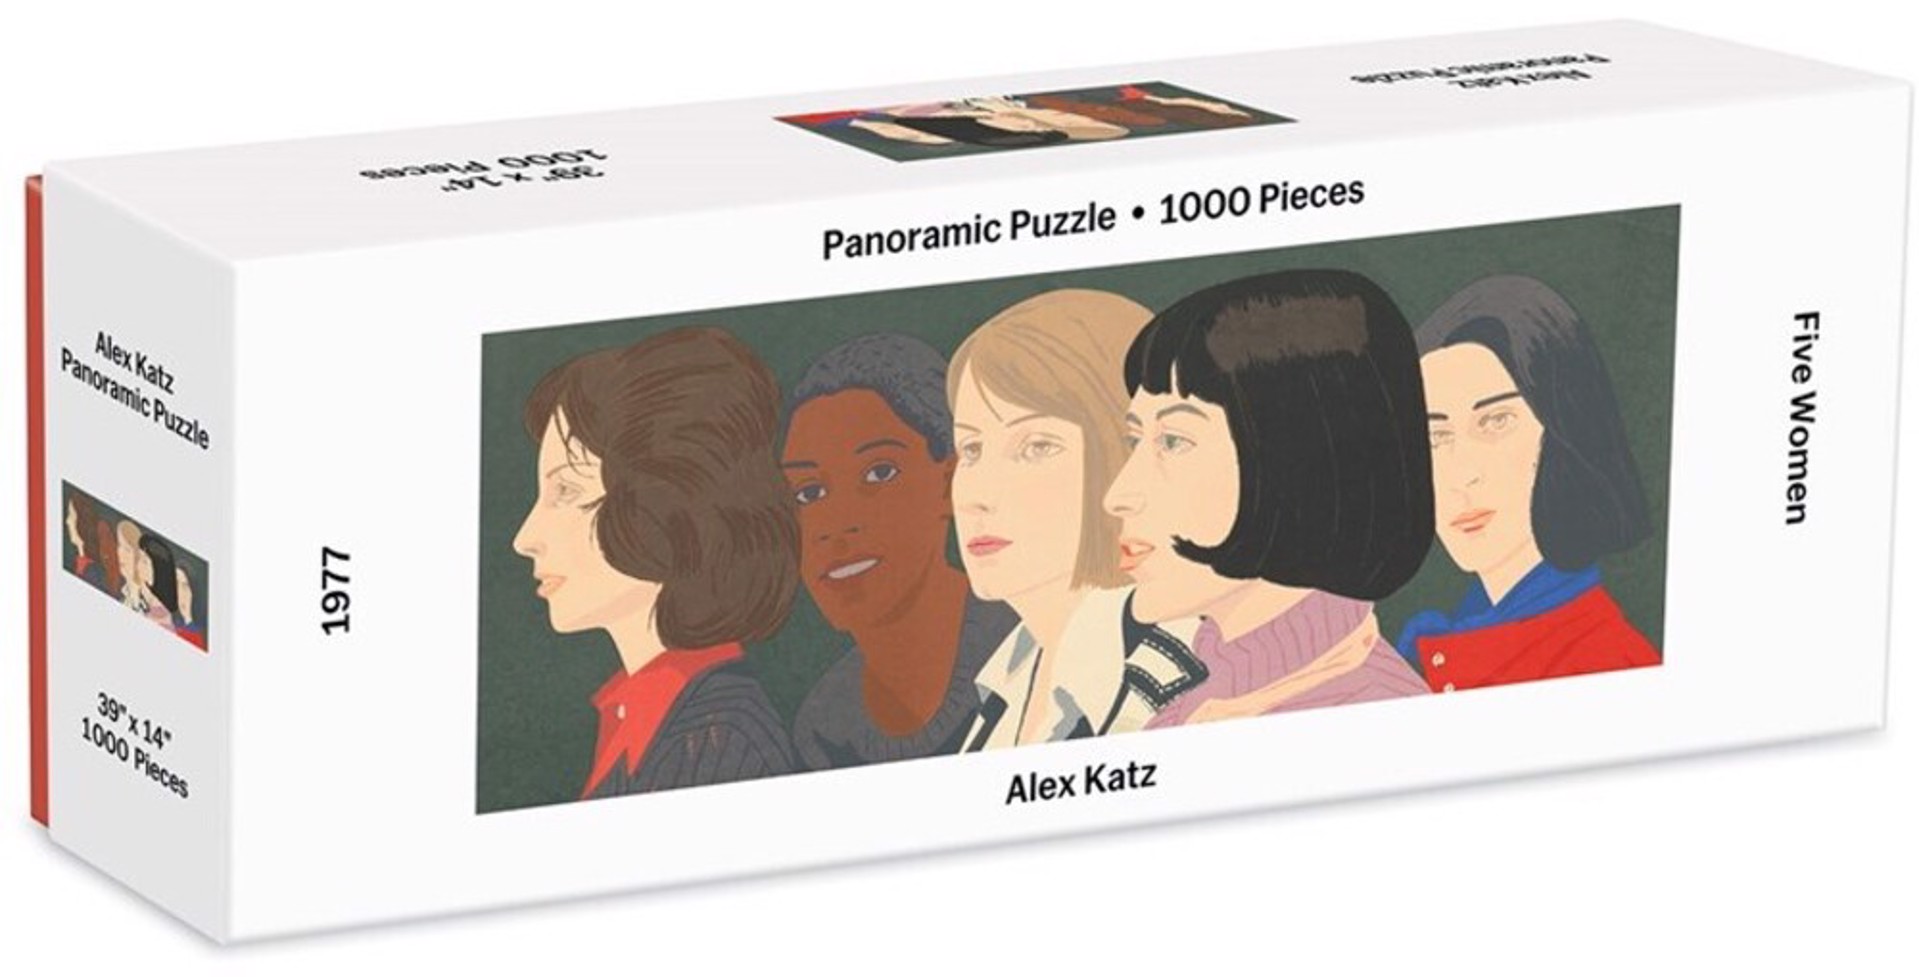 Five Women 1000 Piece Panoramic Jigsaw Puzzle by Alex Katz